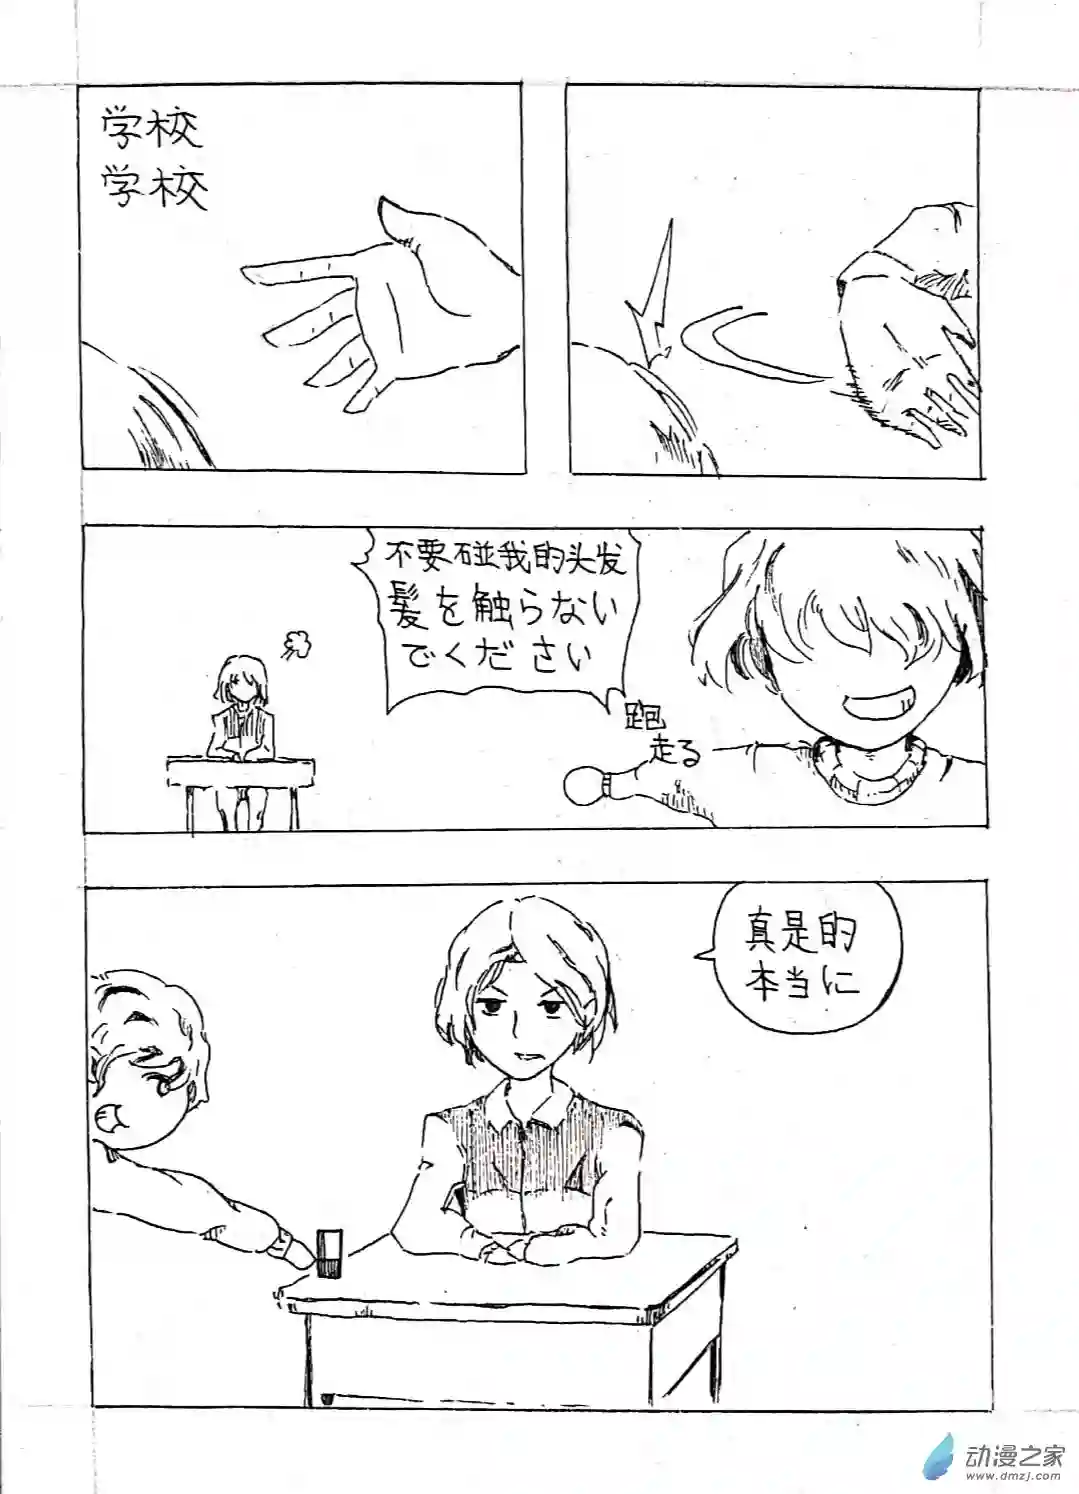 日刊漫画08 少年赏妹篇五